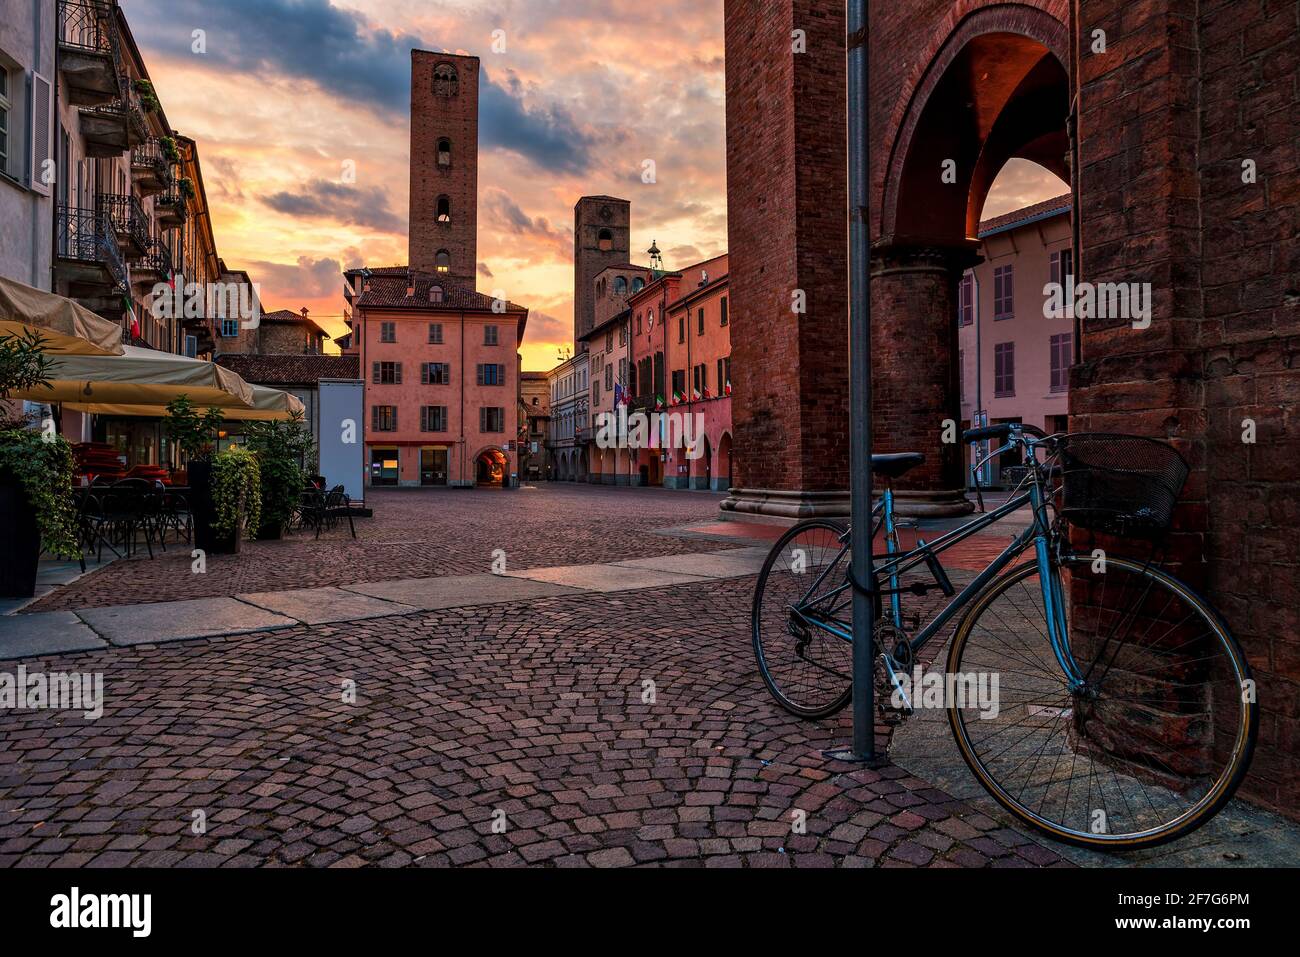 Fahrrad auf dem gepflasterten Stadtplatz, umgeben von alten Häusern und mittelalterlichen Türmen, unter dem wunderschönen Abendhimmel in Alba, Piemont, Norditalien. Stockfoto